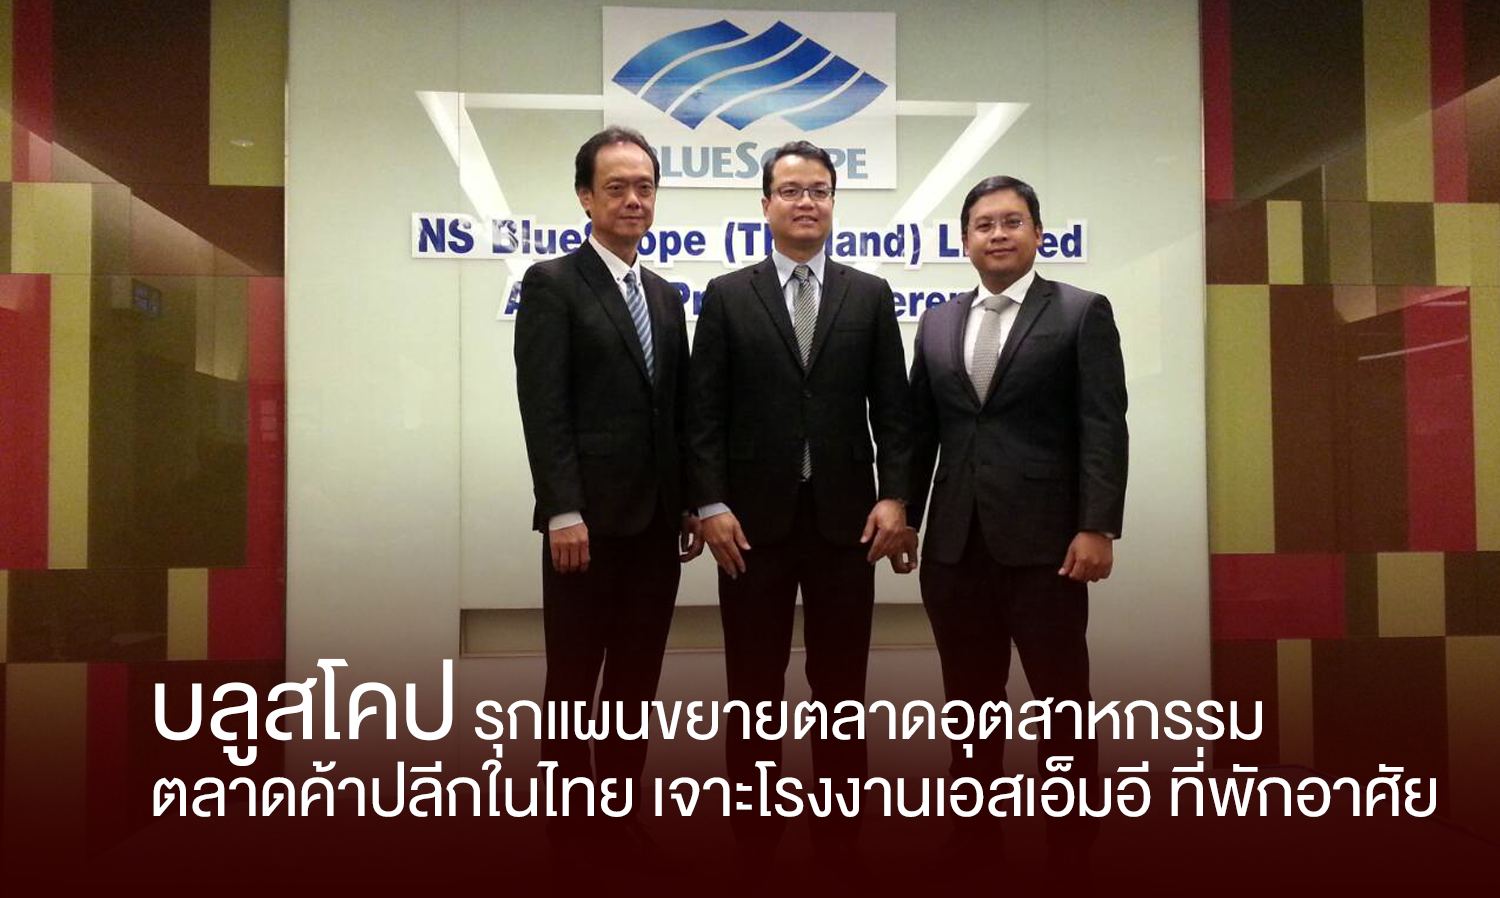 บลูสโคป รุกแผนขยายตลาดอุตสาหกรรม ตลาดค้าปลีกในไทย เจาะโรงงานเอสเอ็มอี ที่พักอาศัย